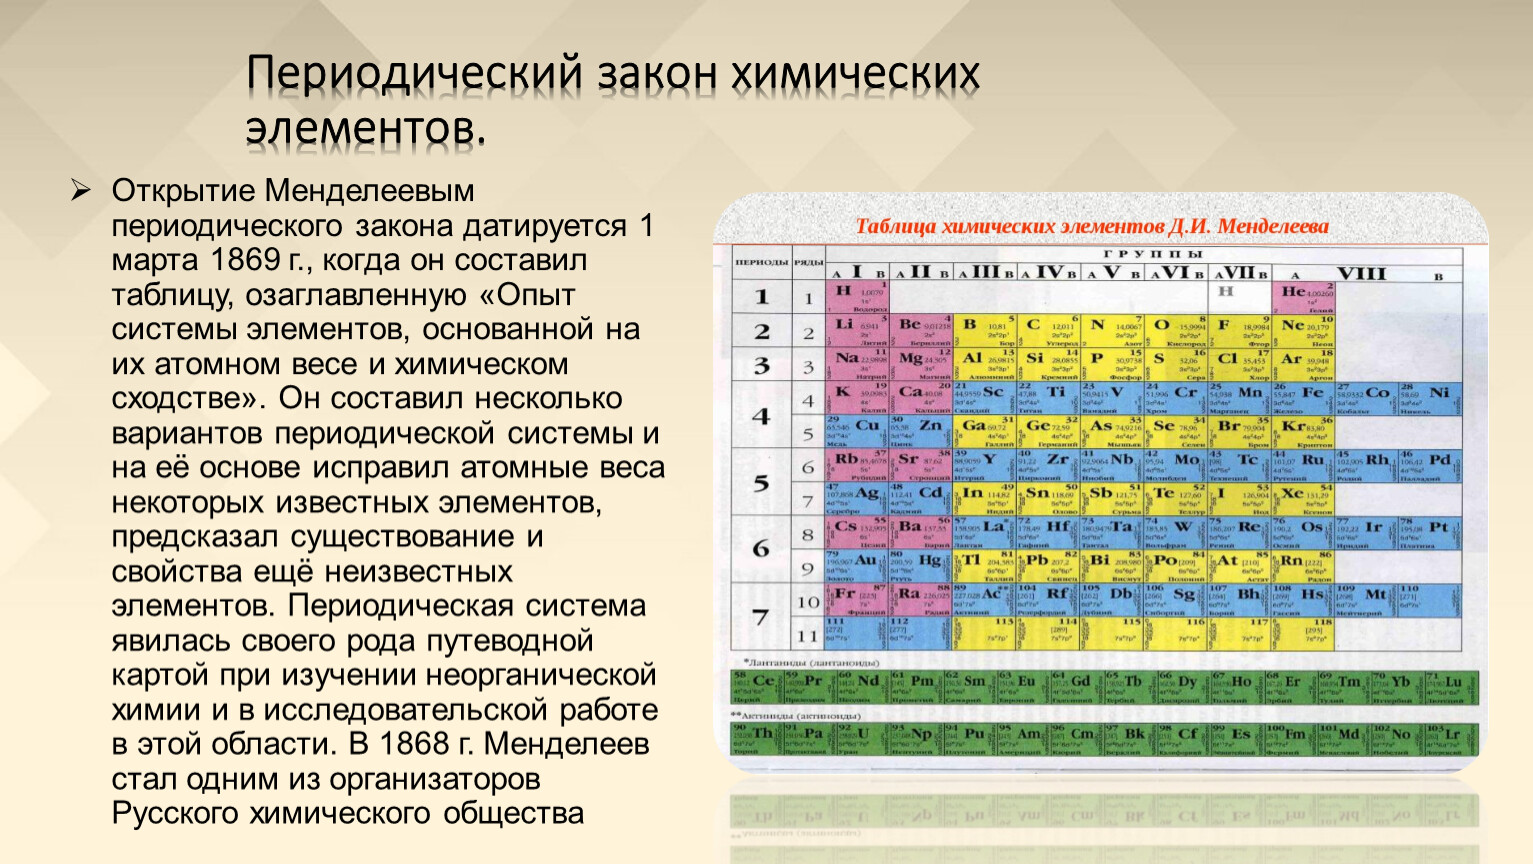 Периодический закон и таблица химических элементов д.и. Менделеева.